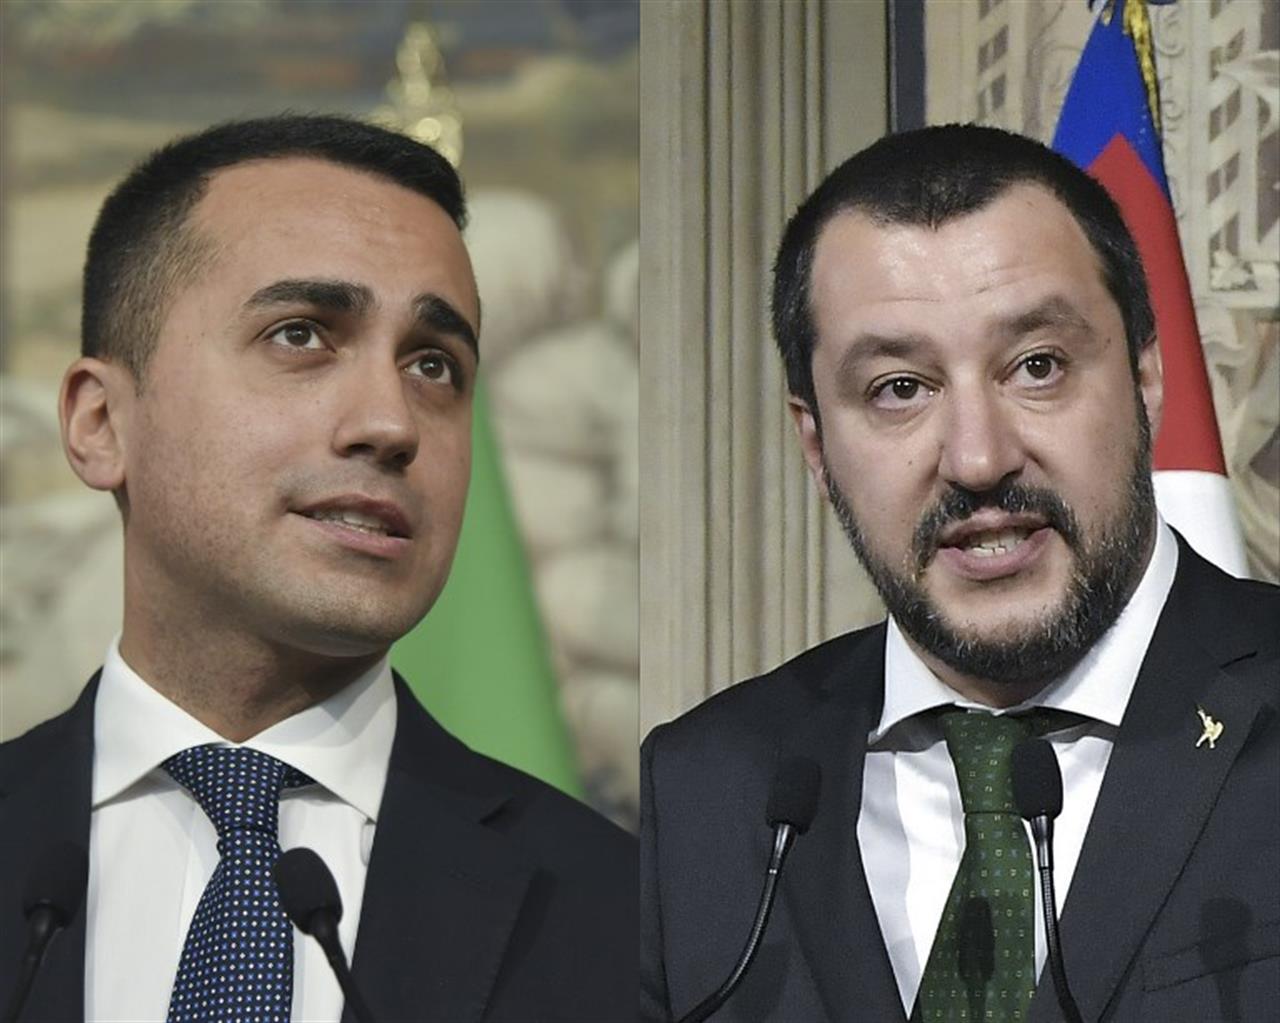 Salvini e Di Maio rispondo alle critiche di Bruxelles e precisano: "vogliamo portare a casa i risultati"